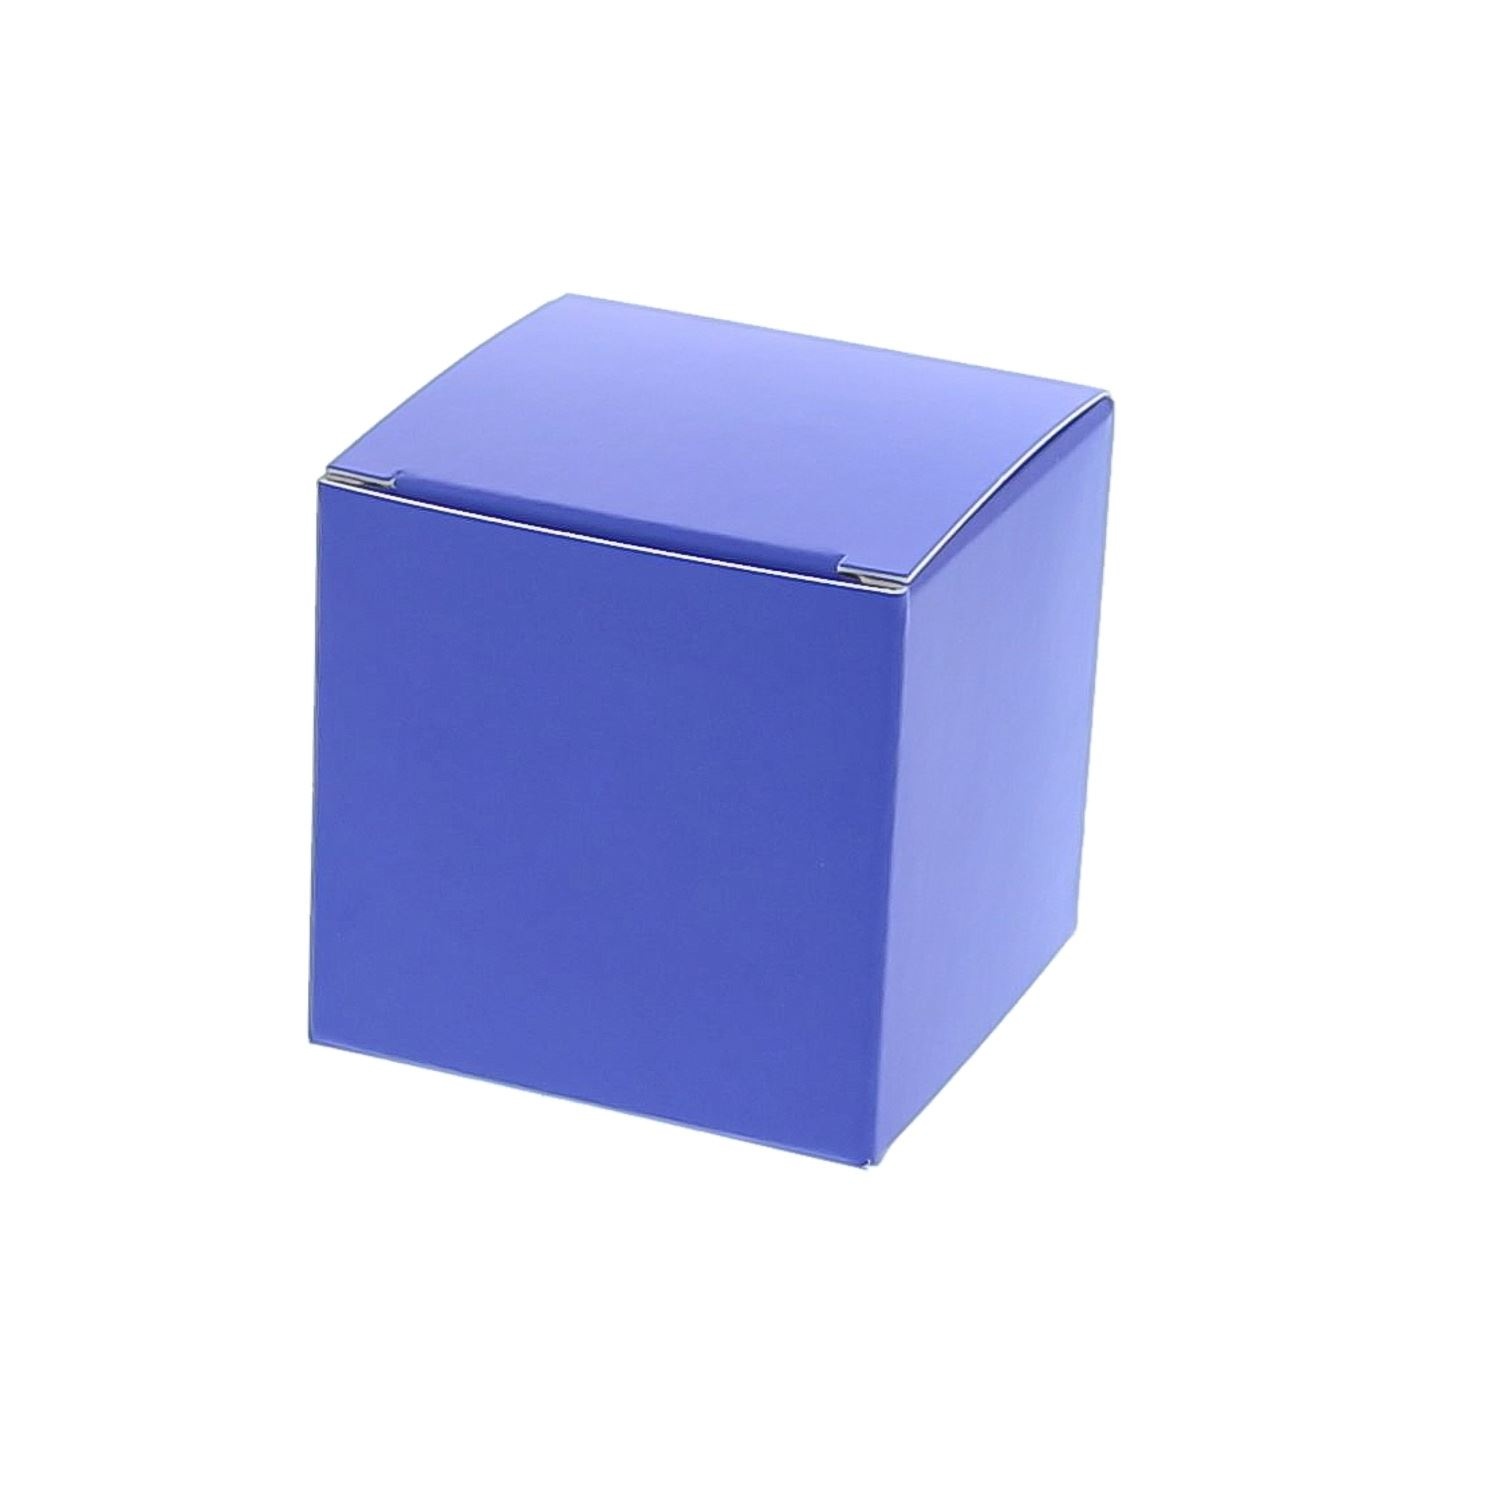 Kleine Würfelbox blau - 100 Stück